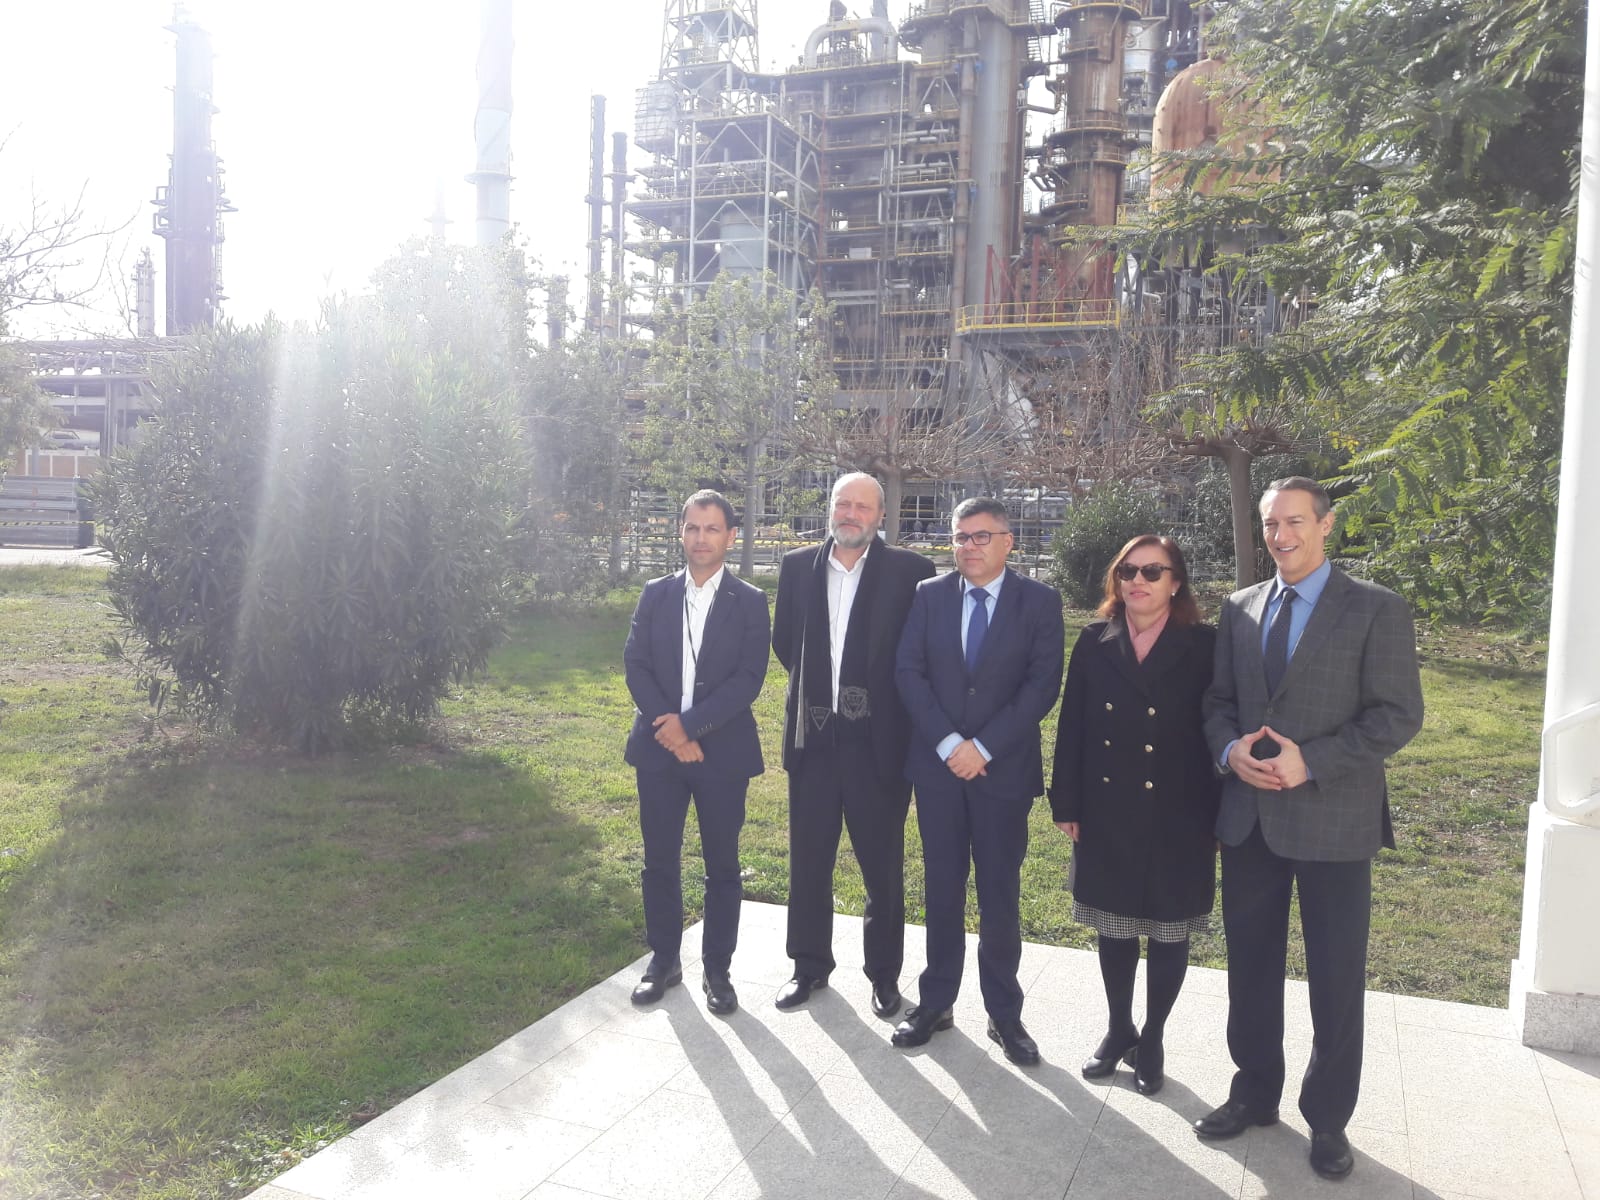 Juan Carlos Fulgencio visita las instalaciones de la BP en Castellón

